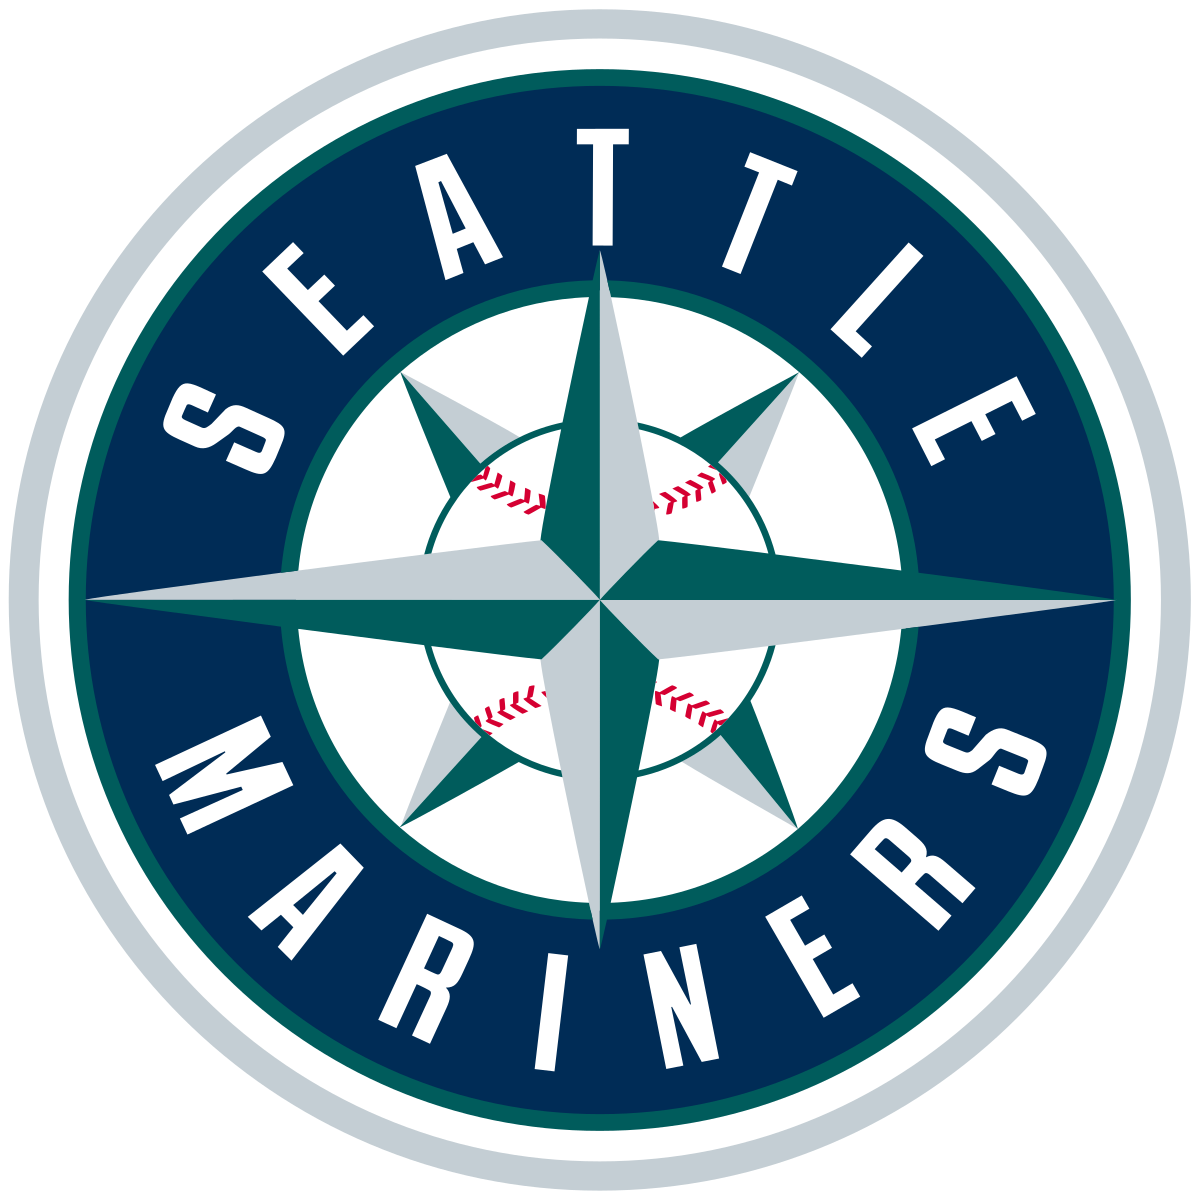 seattles-mariners logo